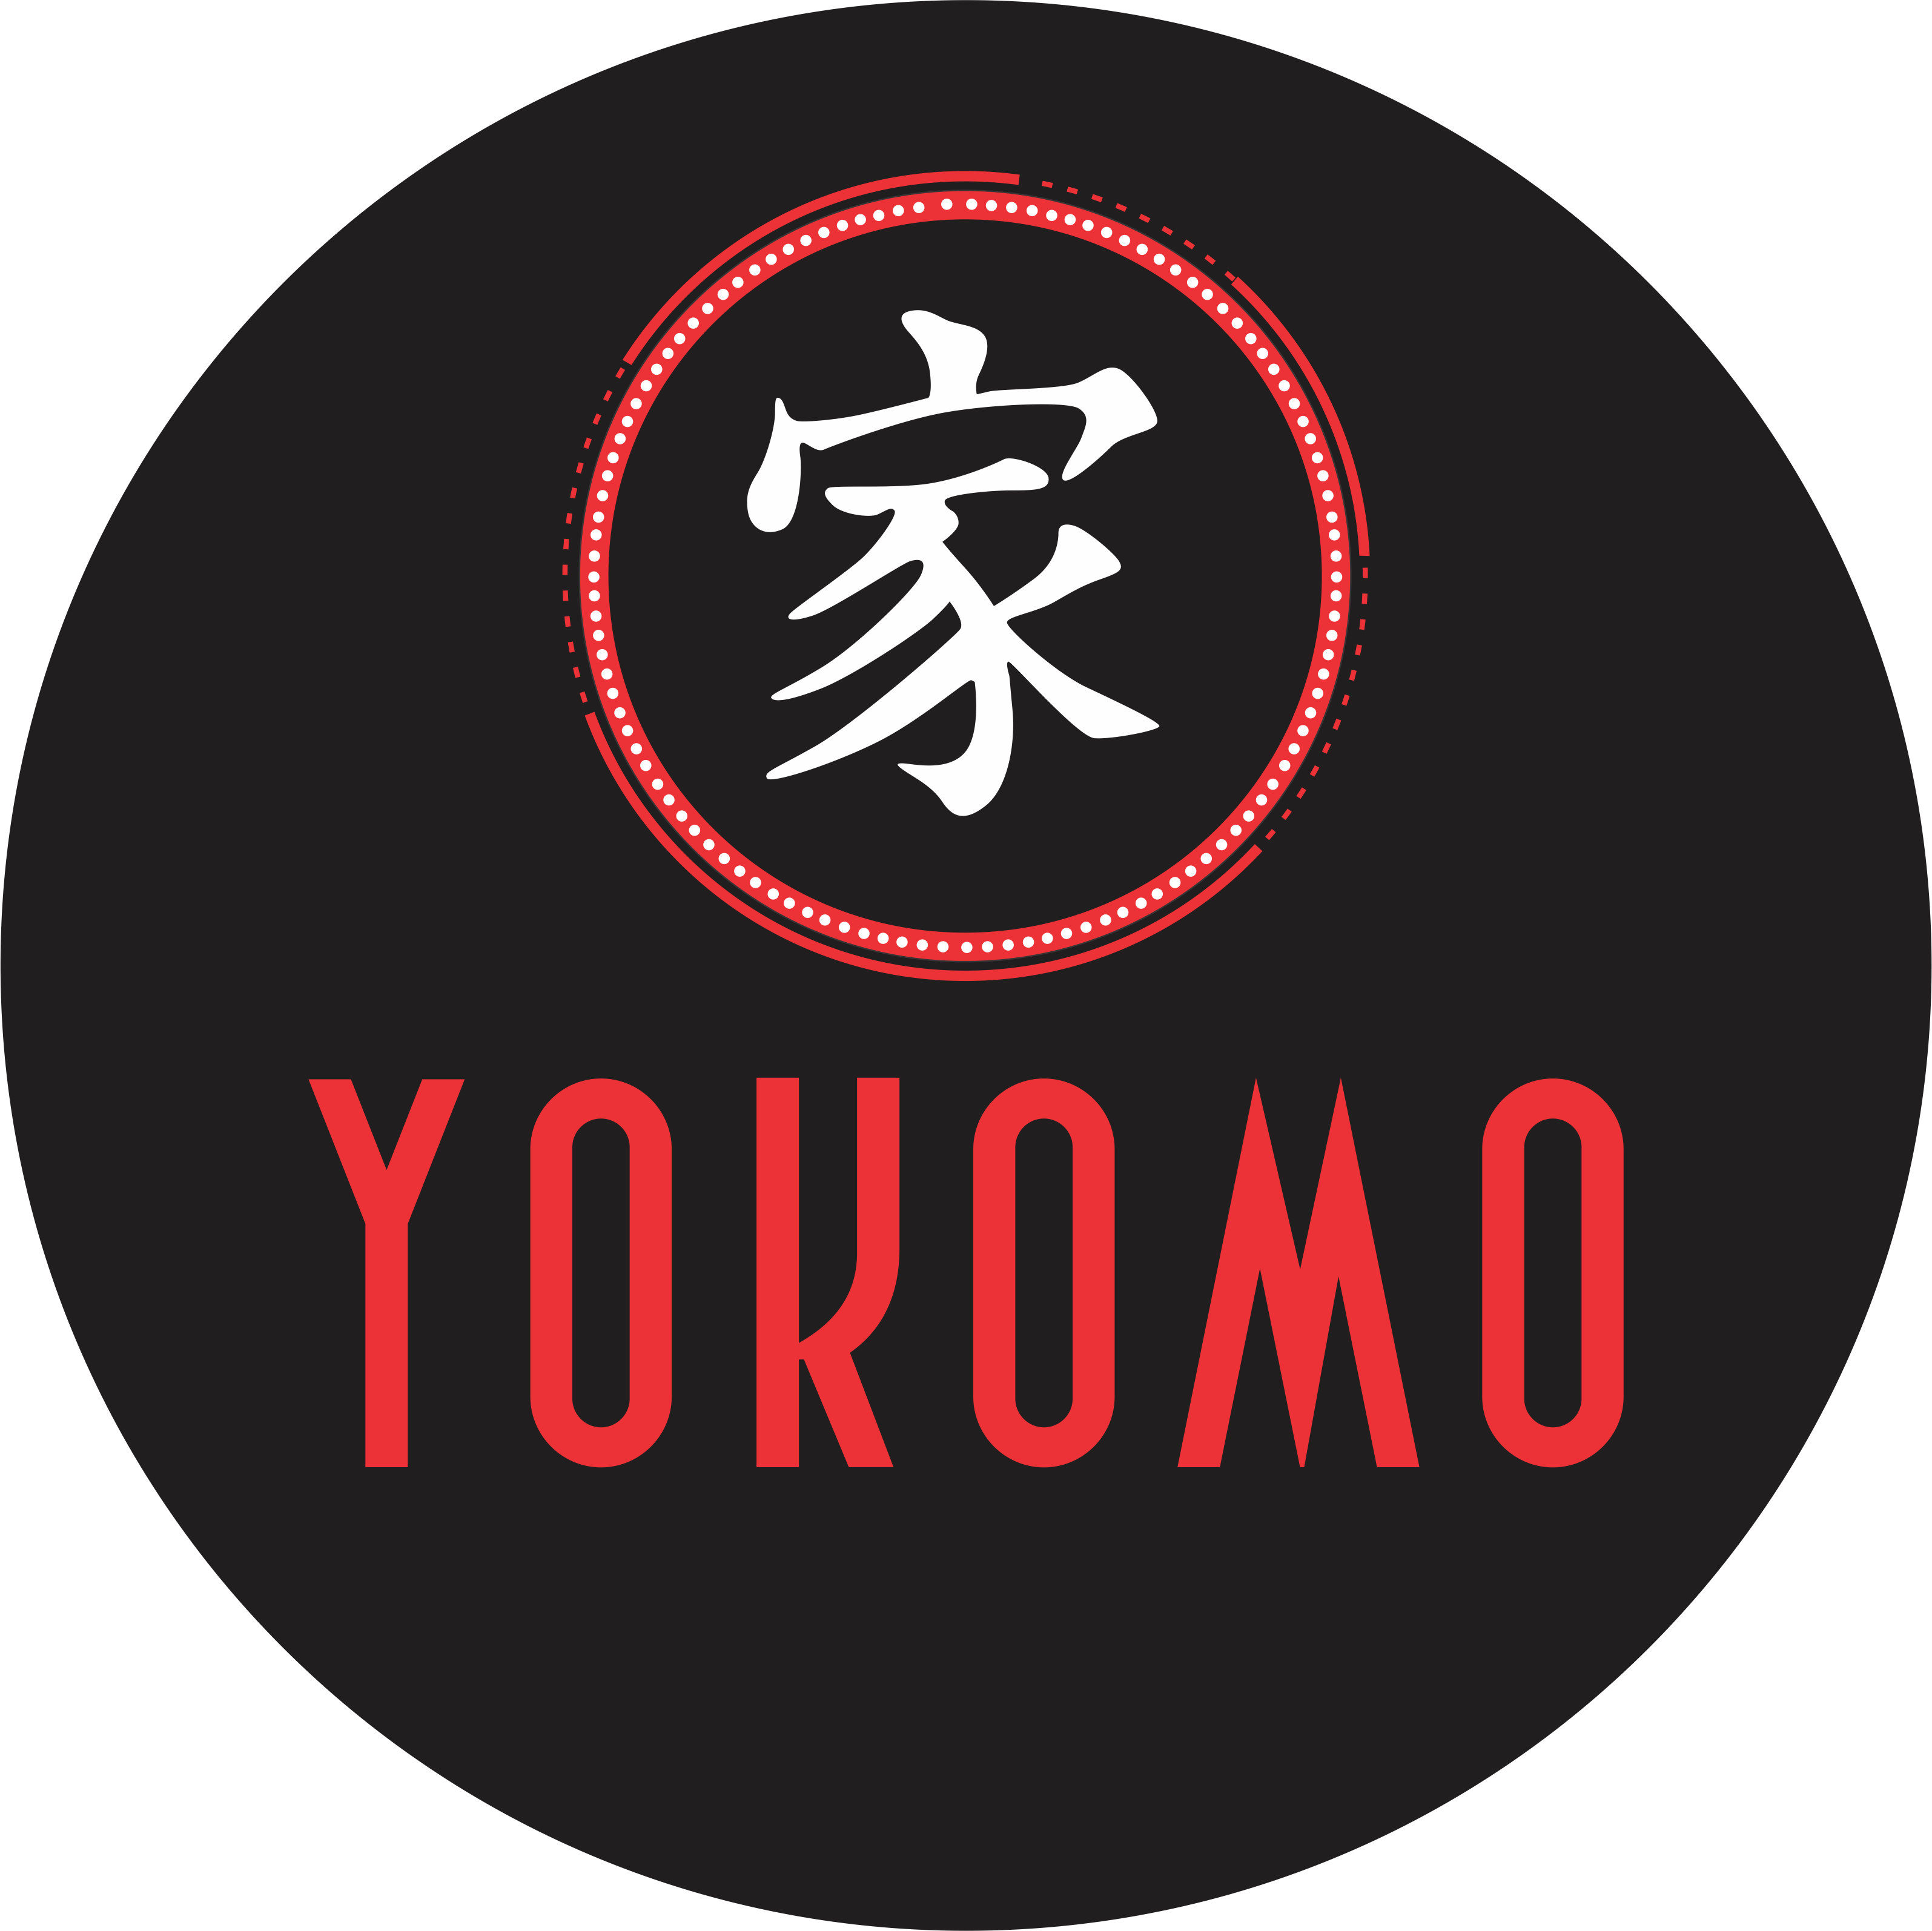 Yokomo Gourmet Delivery